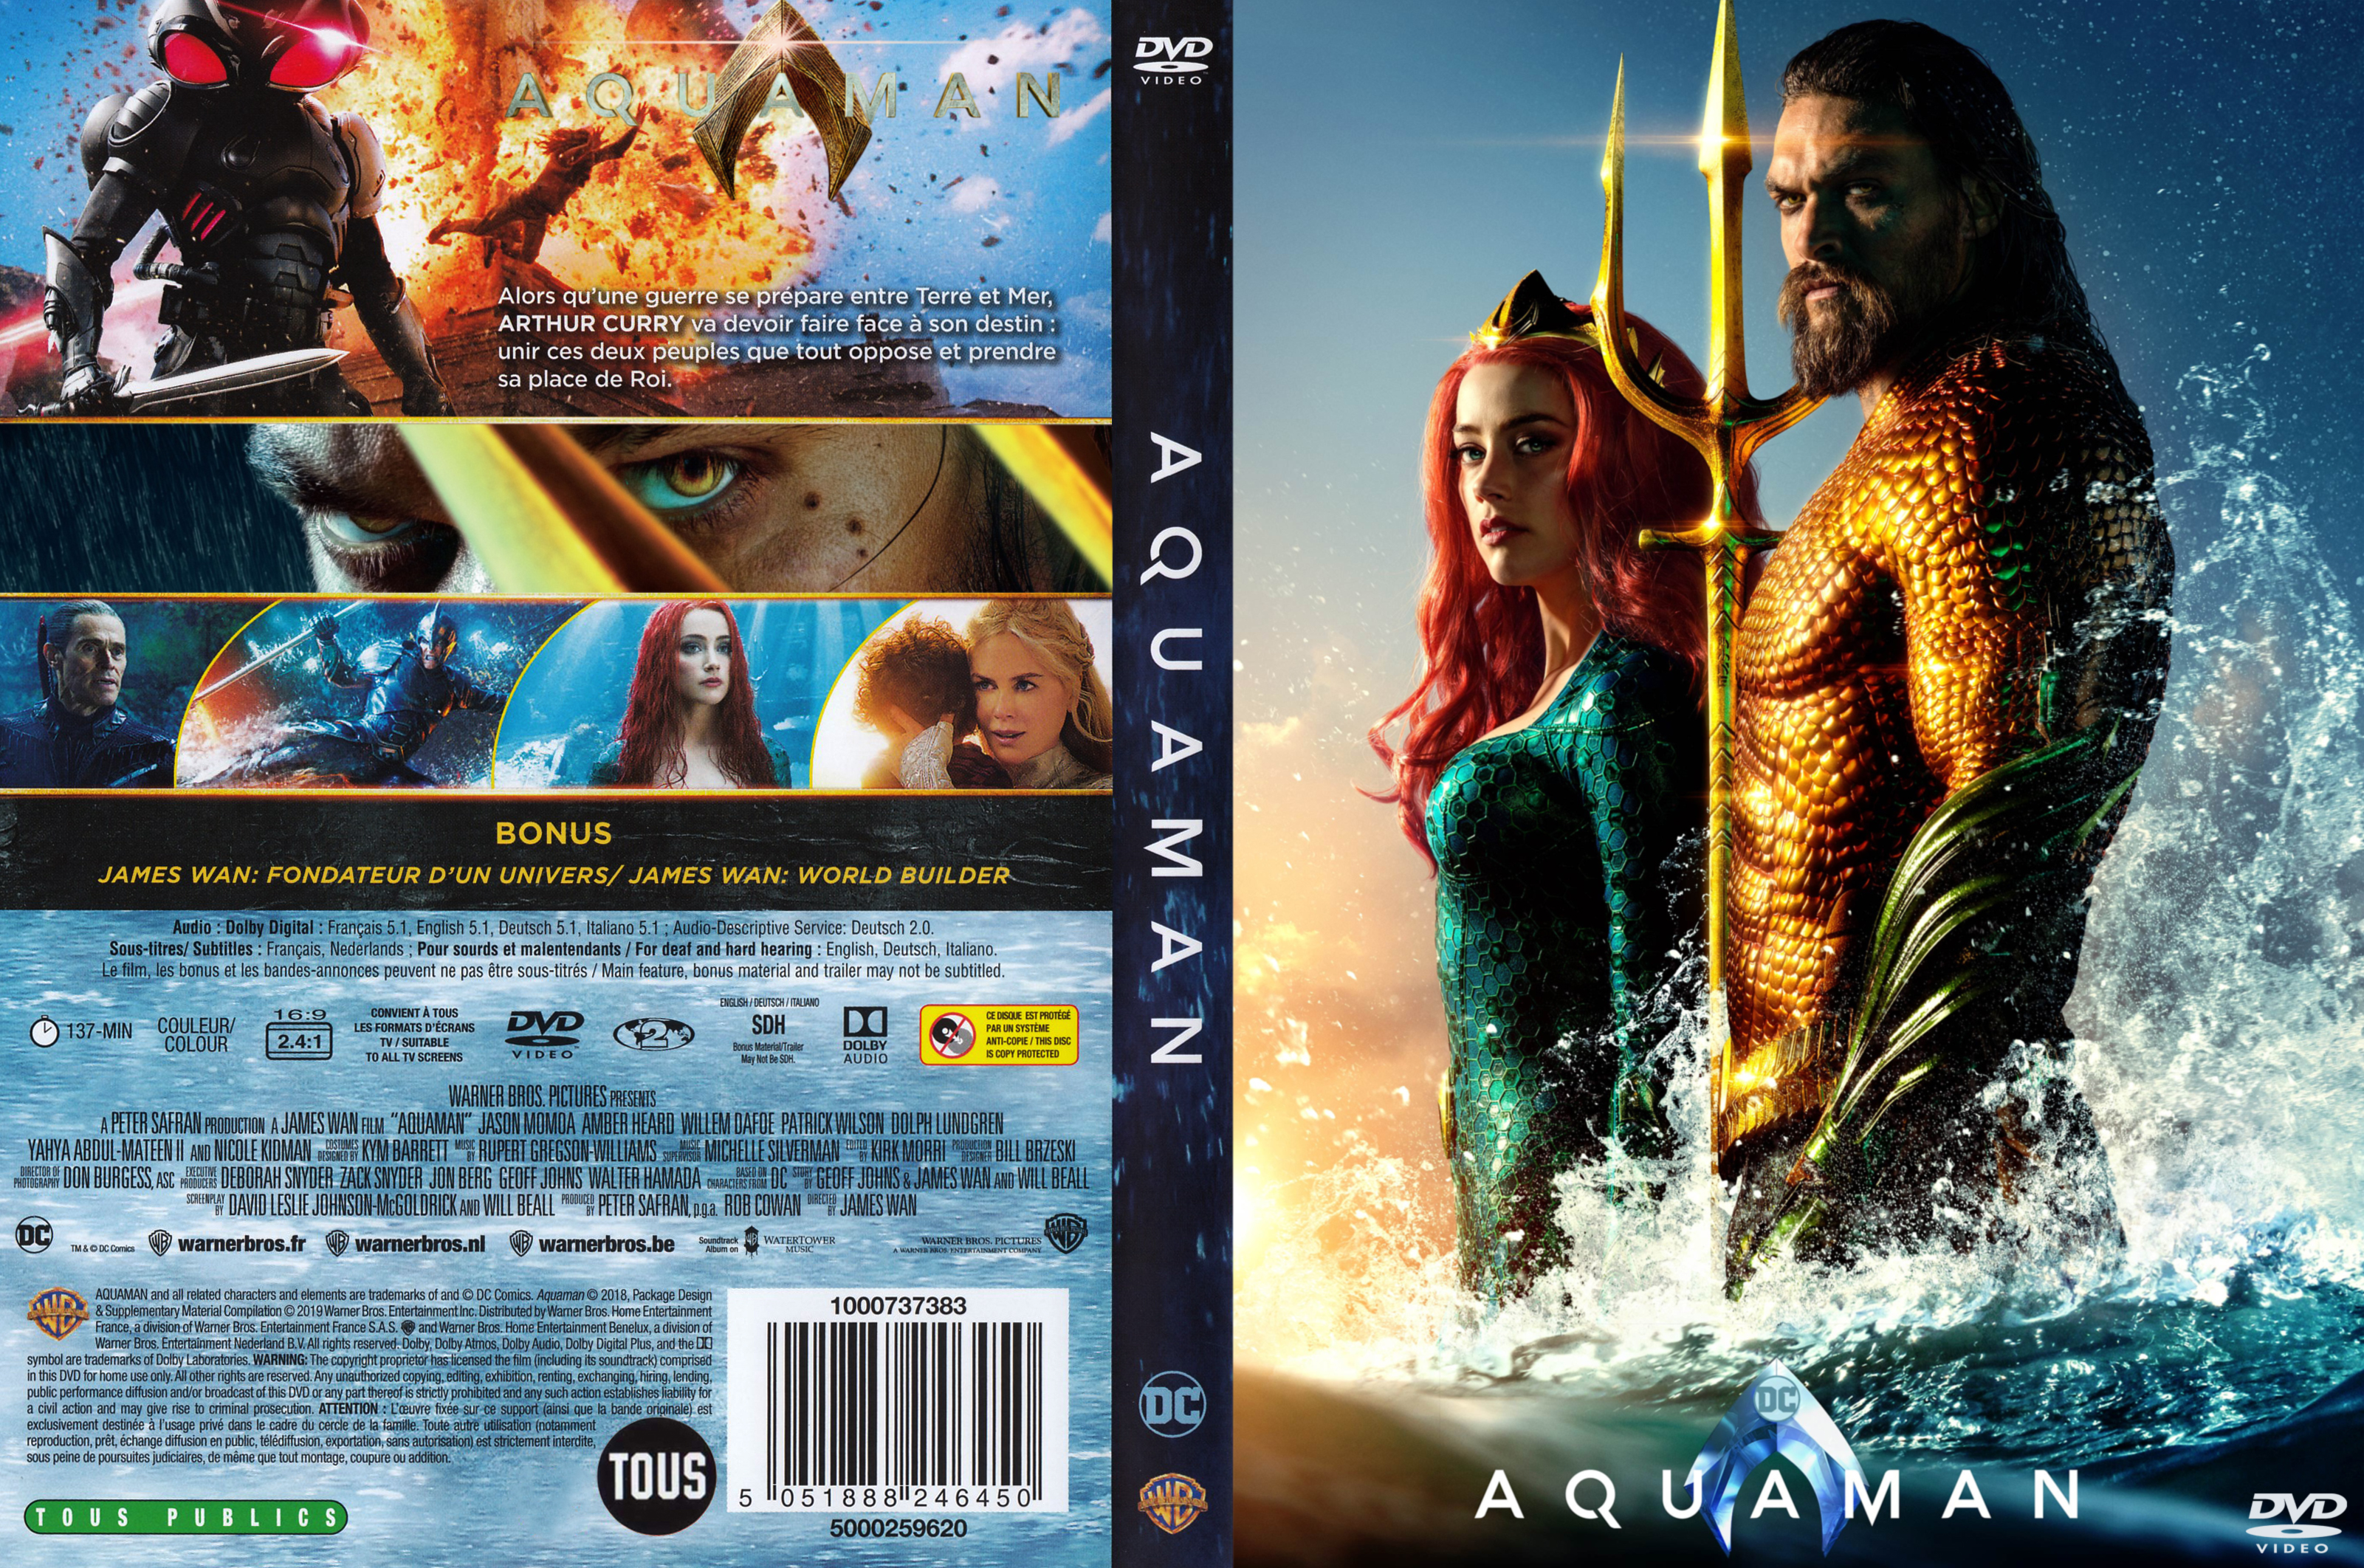 Jaquette DVD de Aquaman custom - Cinéma Passion